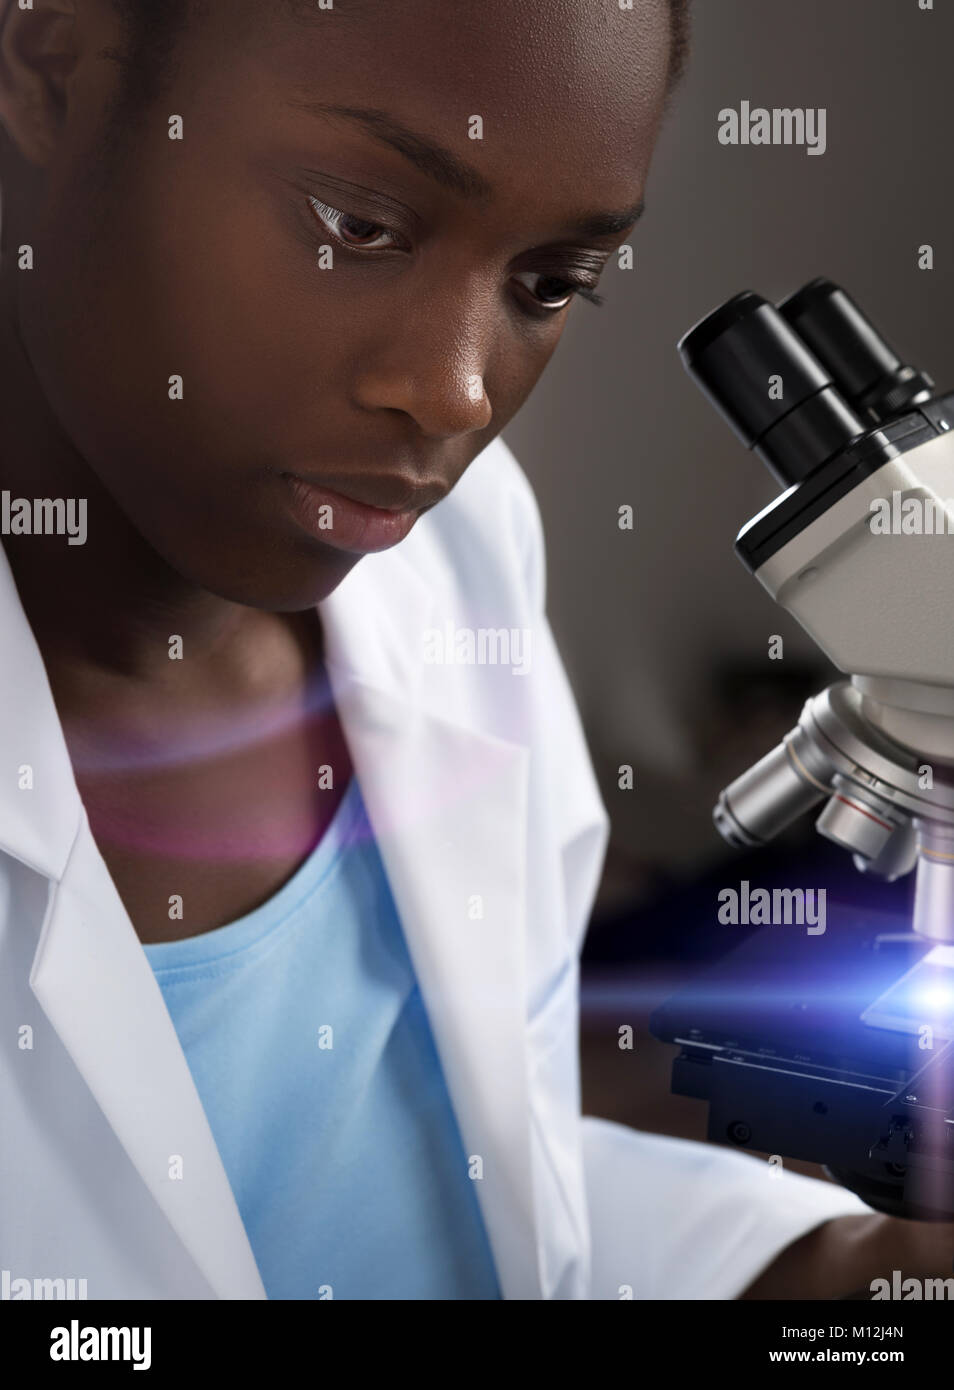 African-American Scientist, travailleur de la santé, technologie ou étudiant diplômé travaille avec microscope Banque D'Images